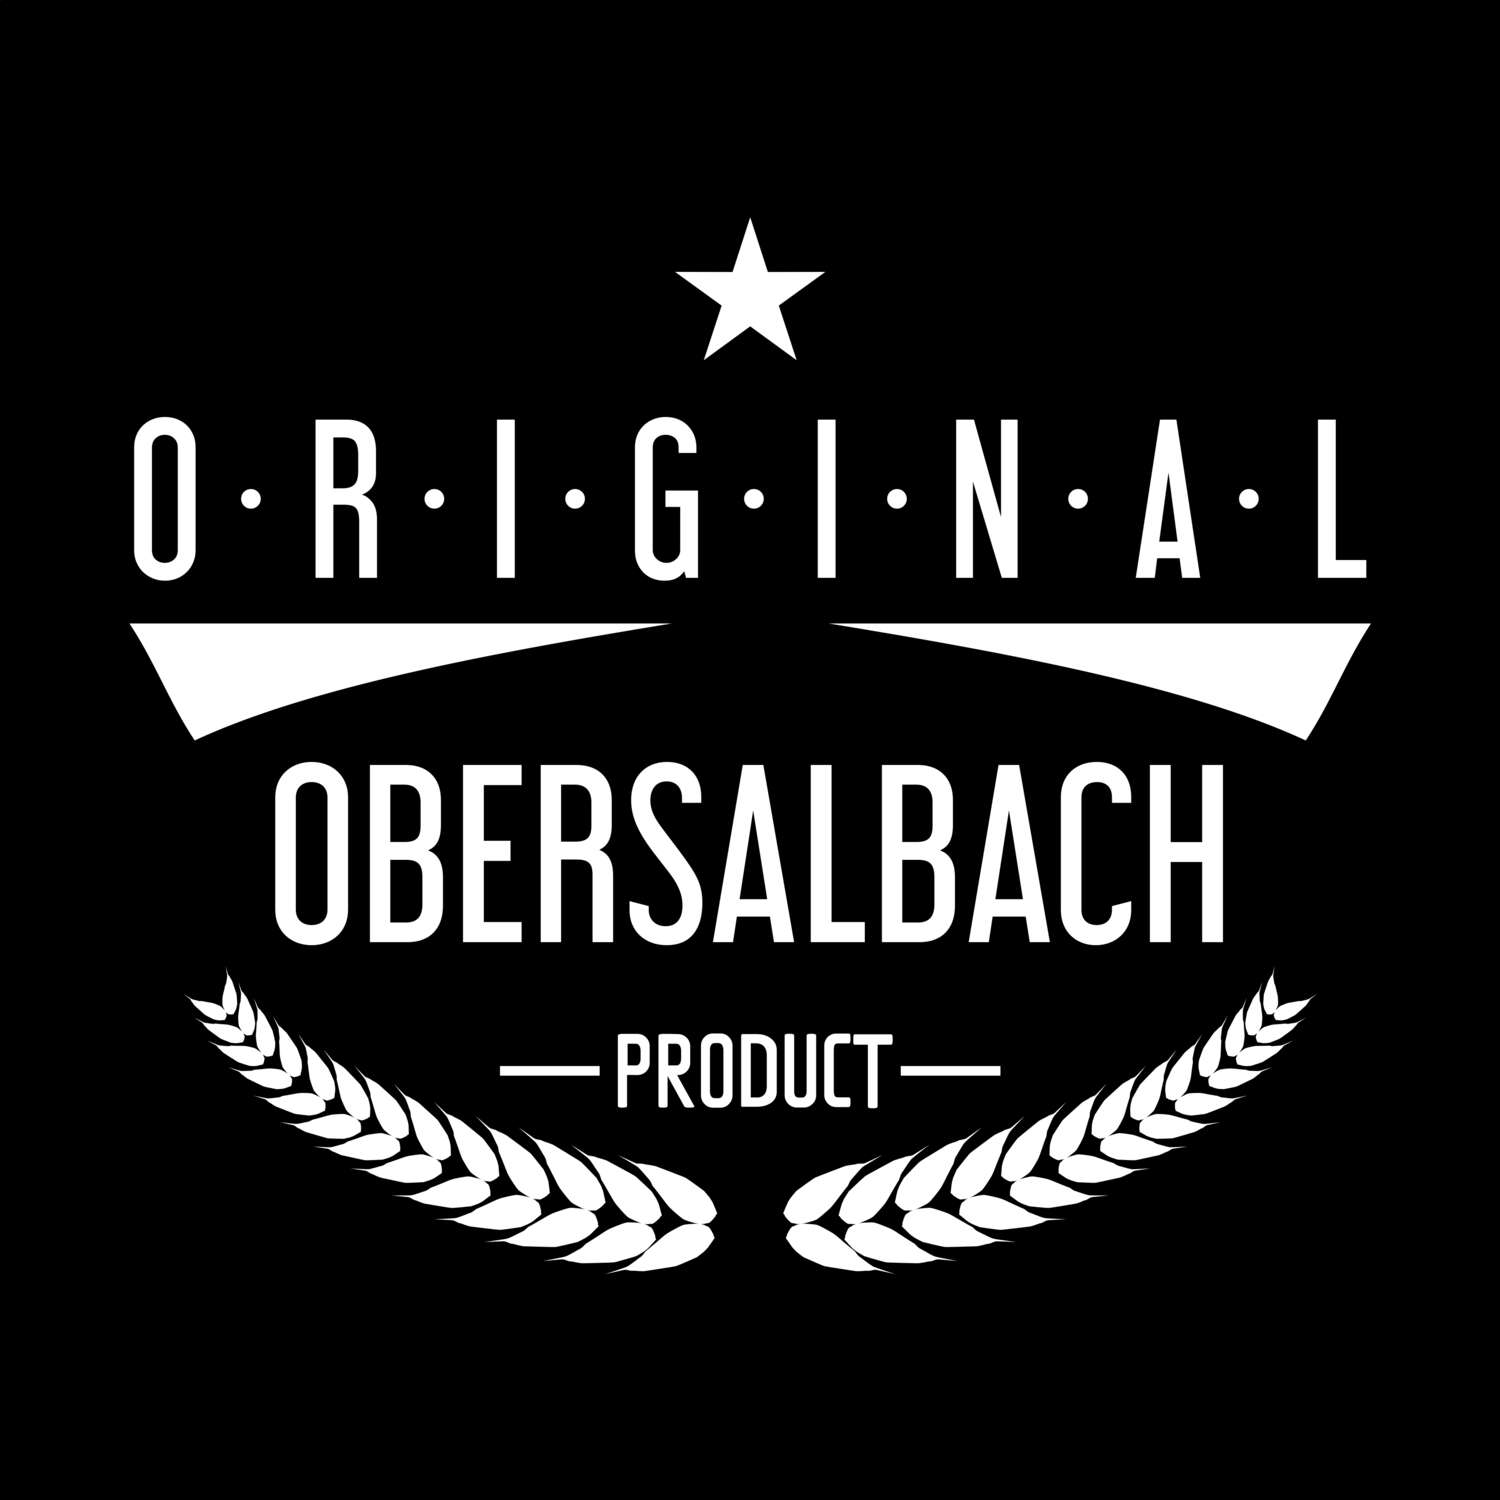 Obersalbach T-Shirt »Original Product«